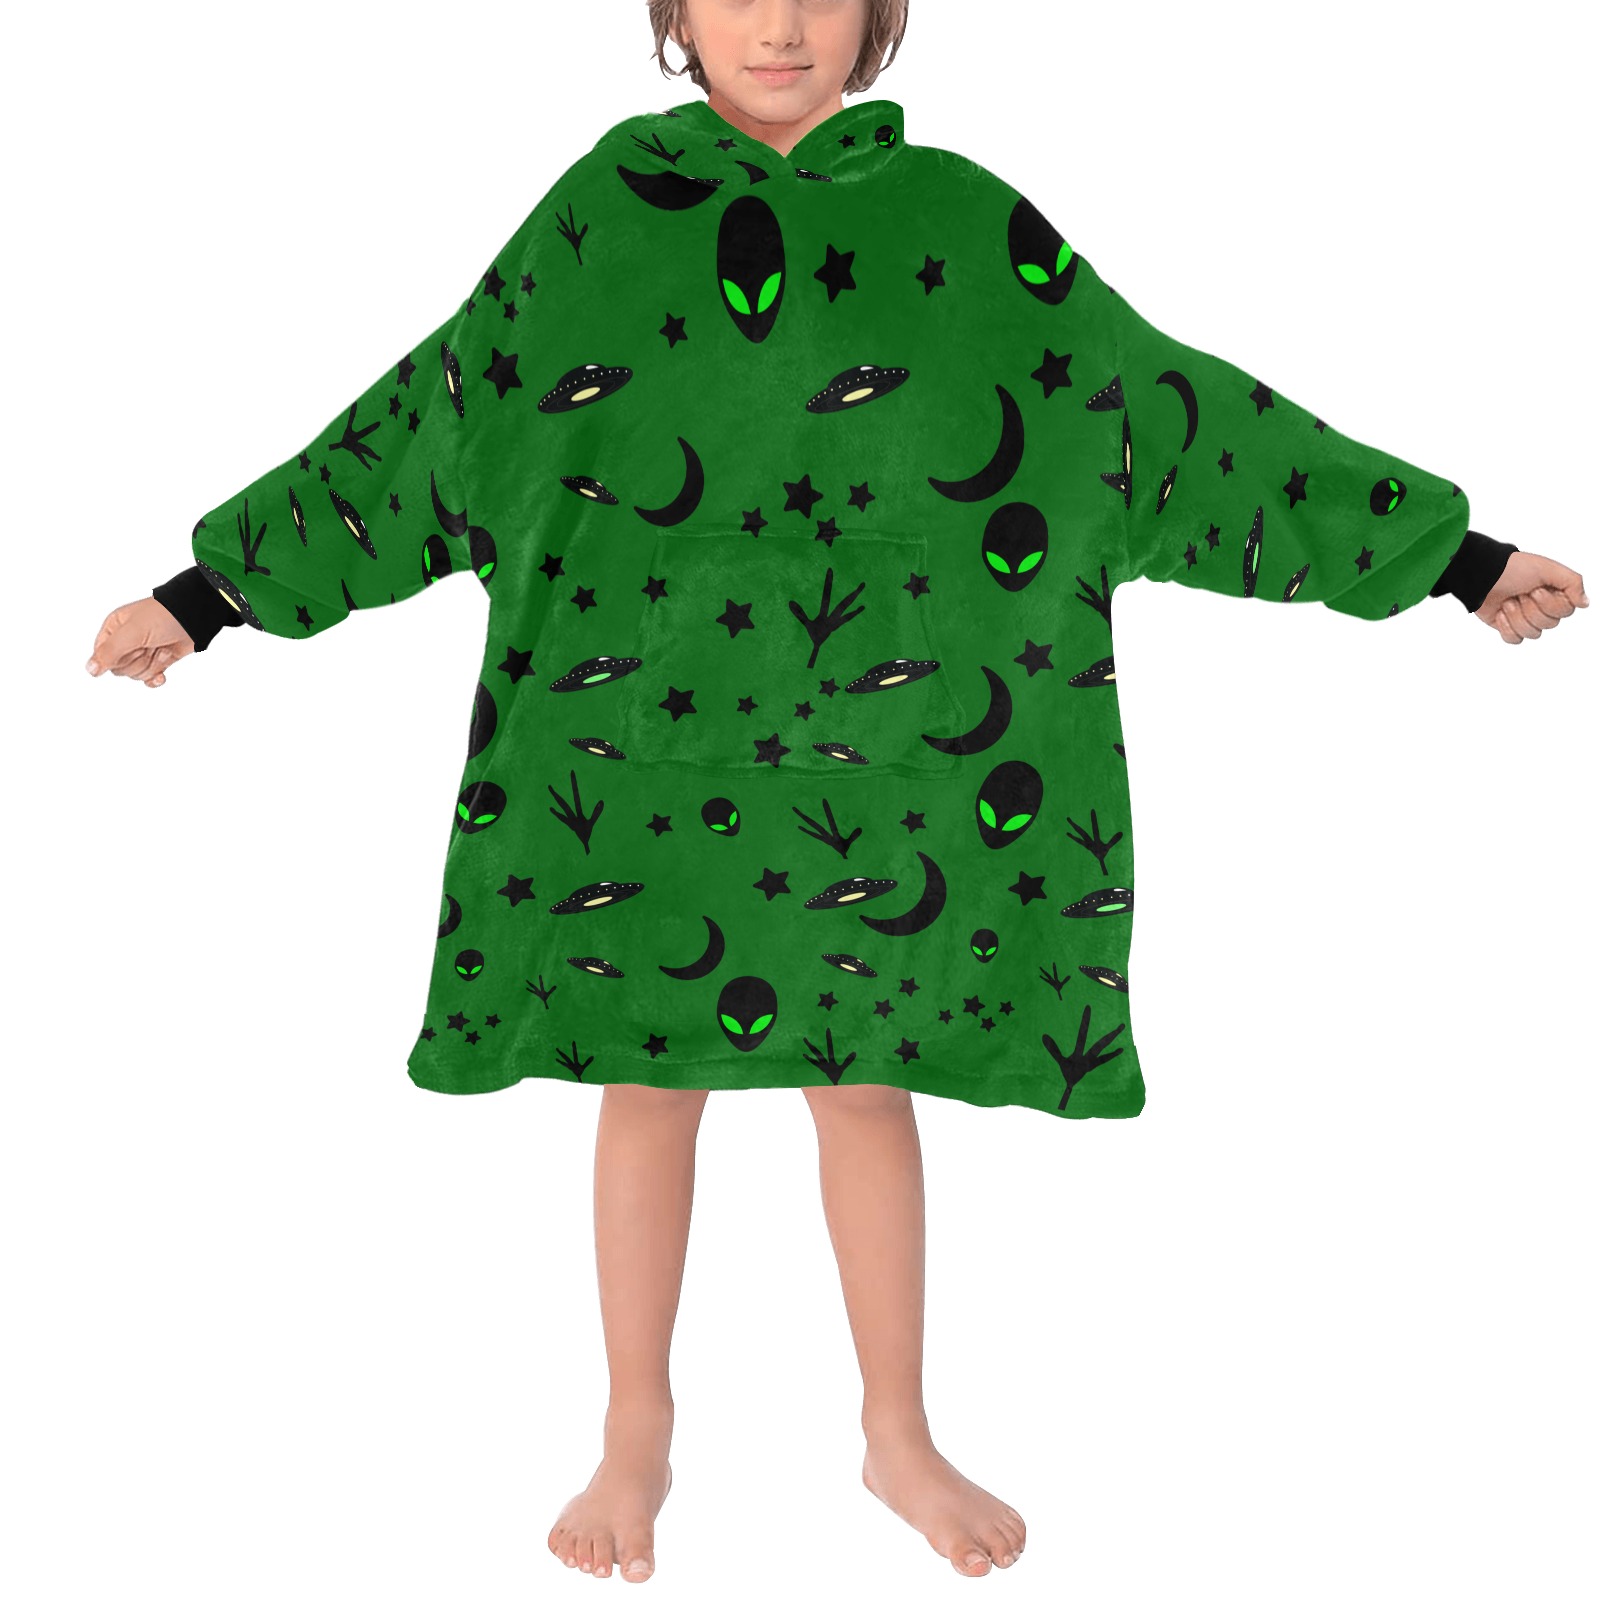 Aliens and Spaceships - Green Blanket Hoodie for Kids